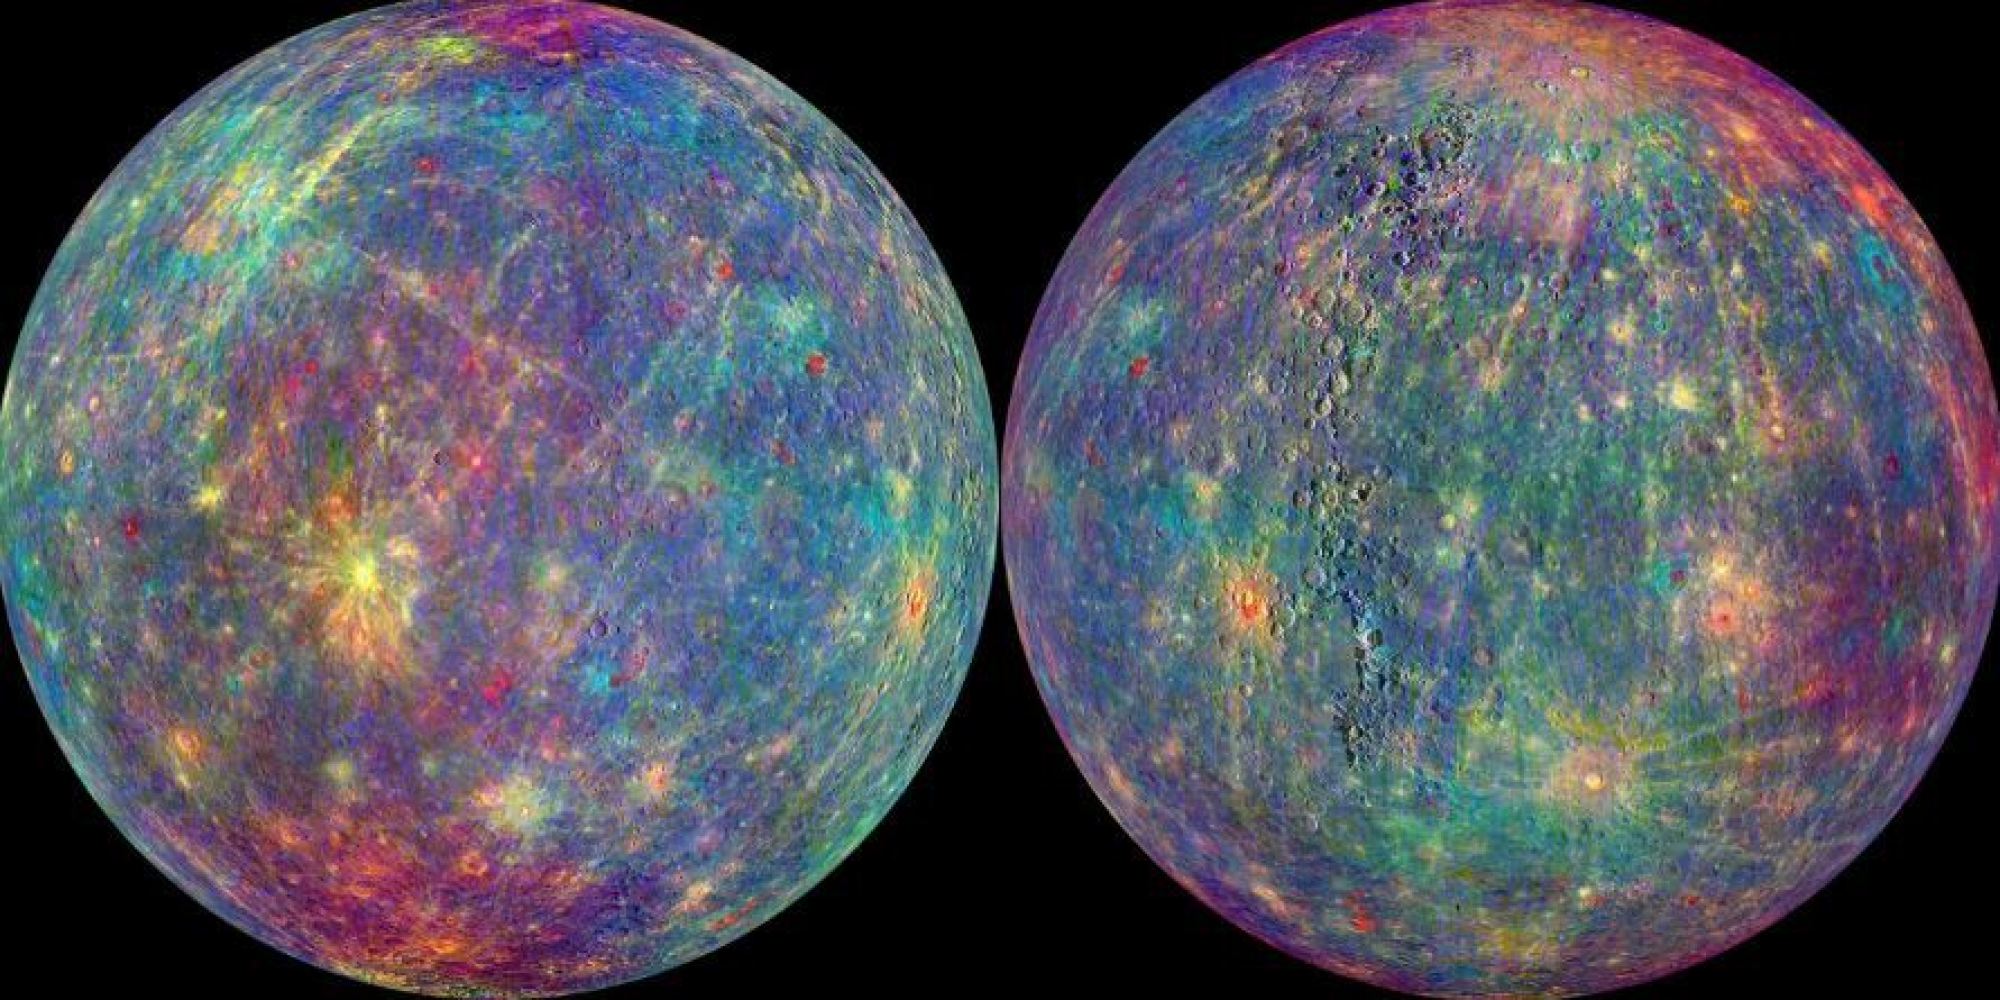 La NASA publie des photos inédites de la planète Mercure prises par la